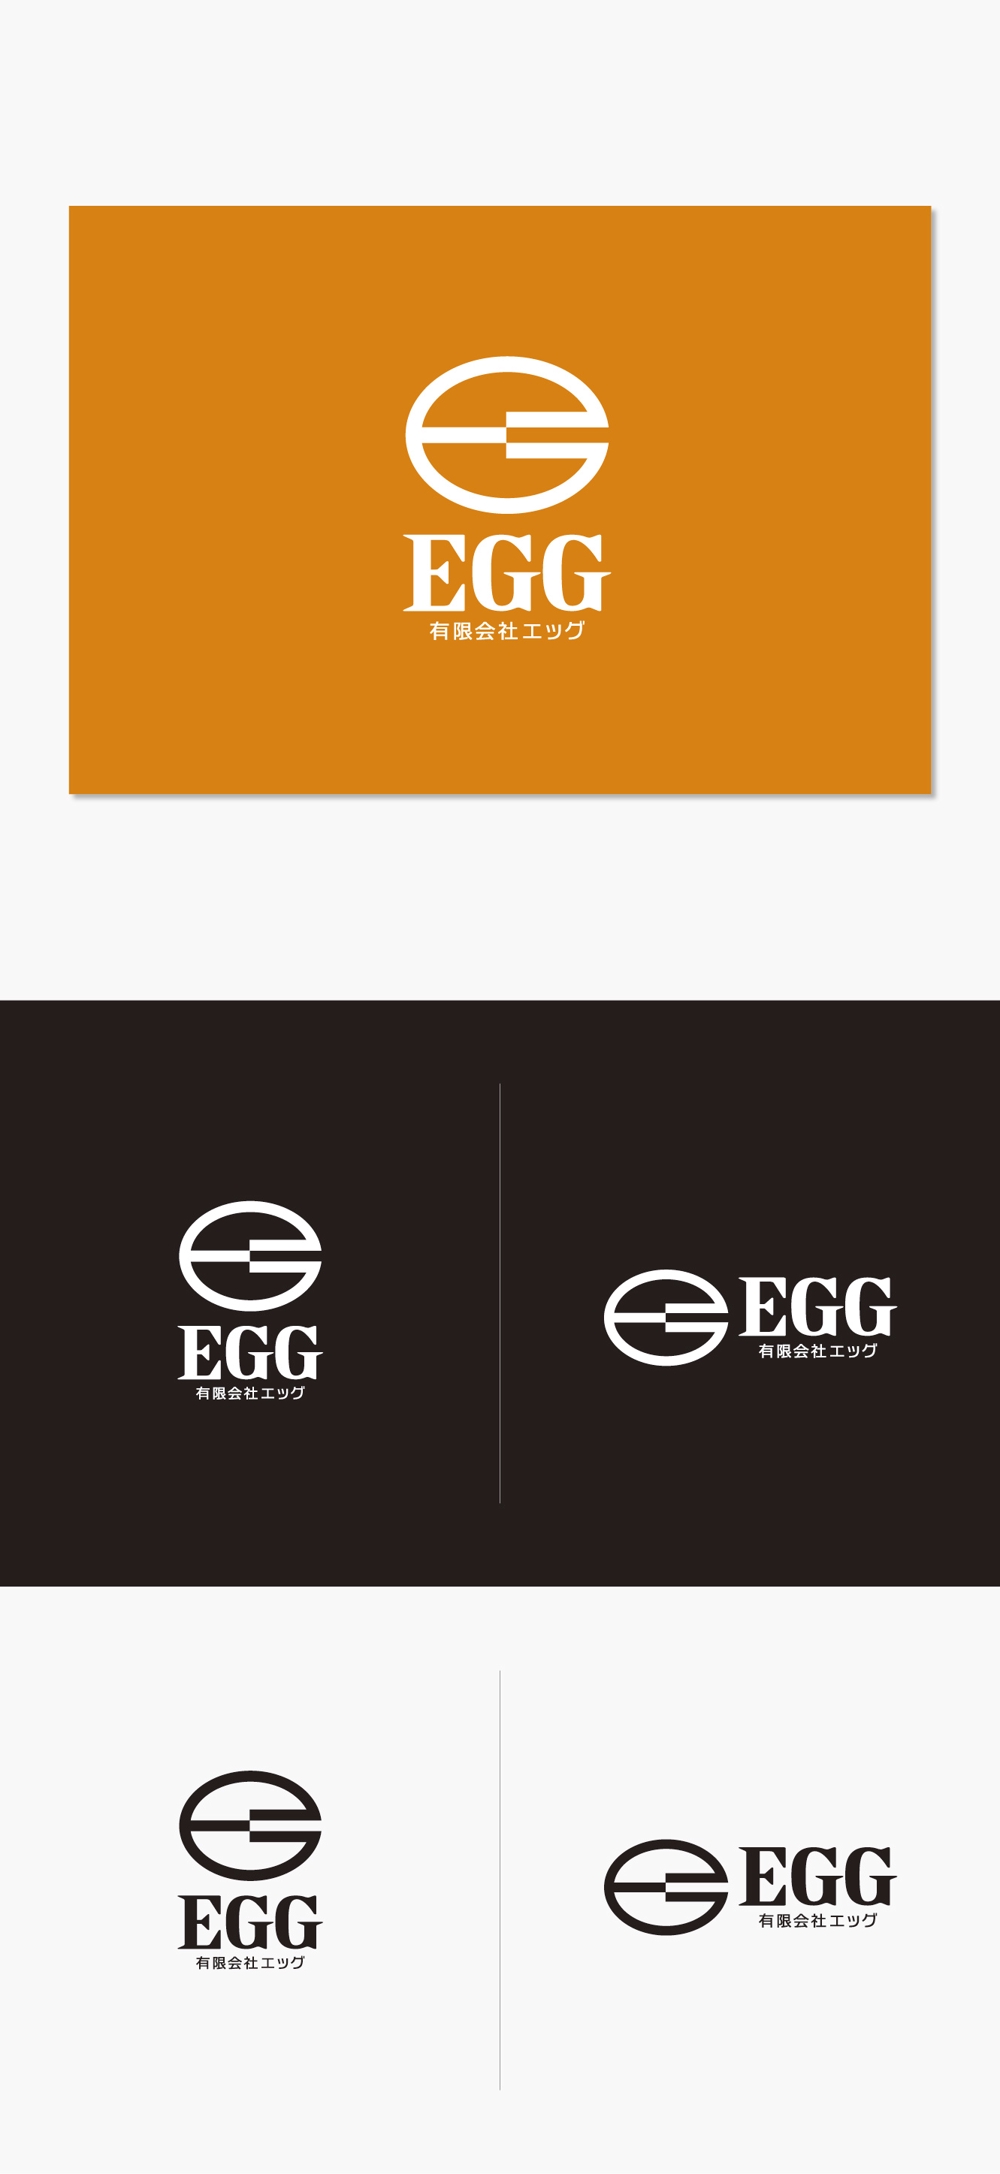 削蹄と畜産関連資材の輸入・製造・販売「有限会社エッグ」のロゴ